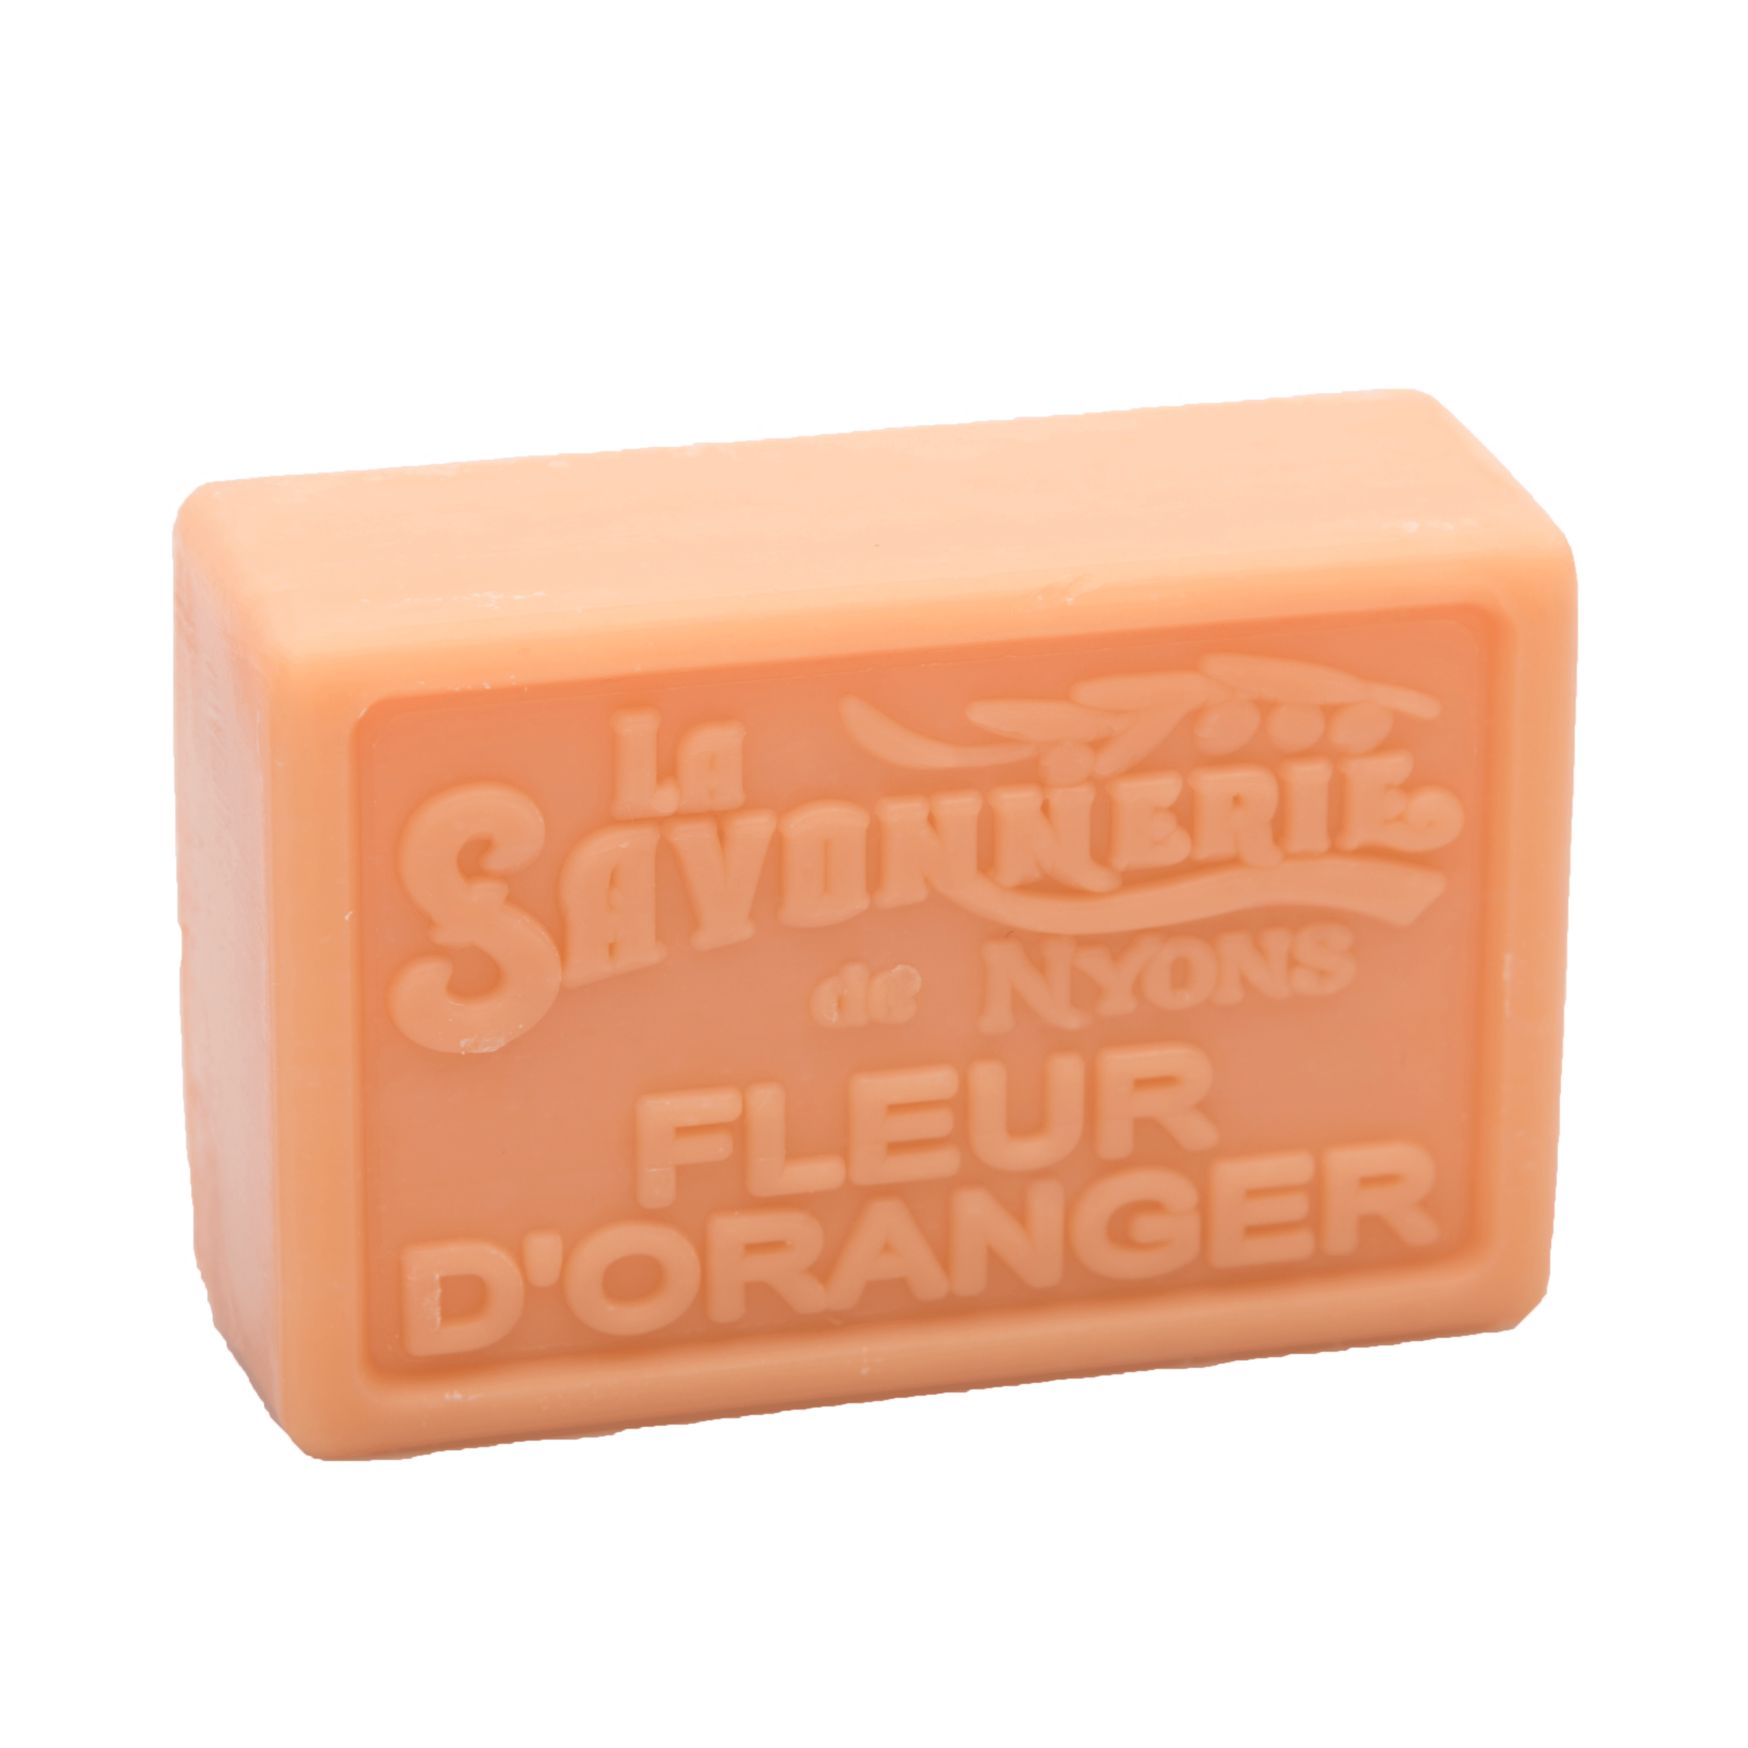 La Savonnerie de Nyons 100g Soap Bar (Set of 2)